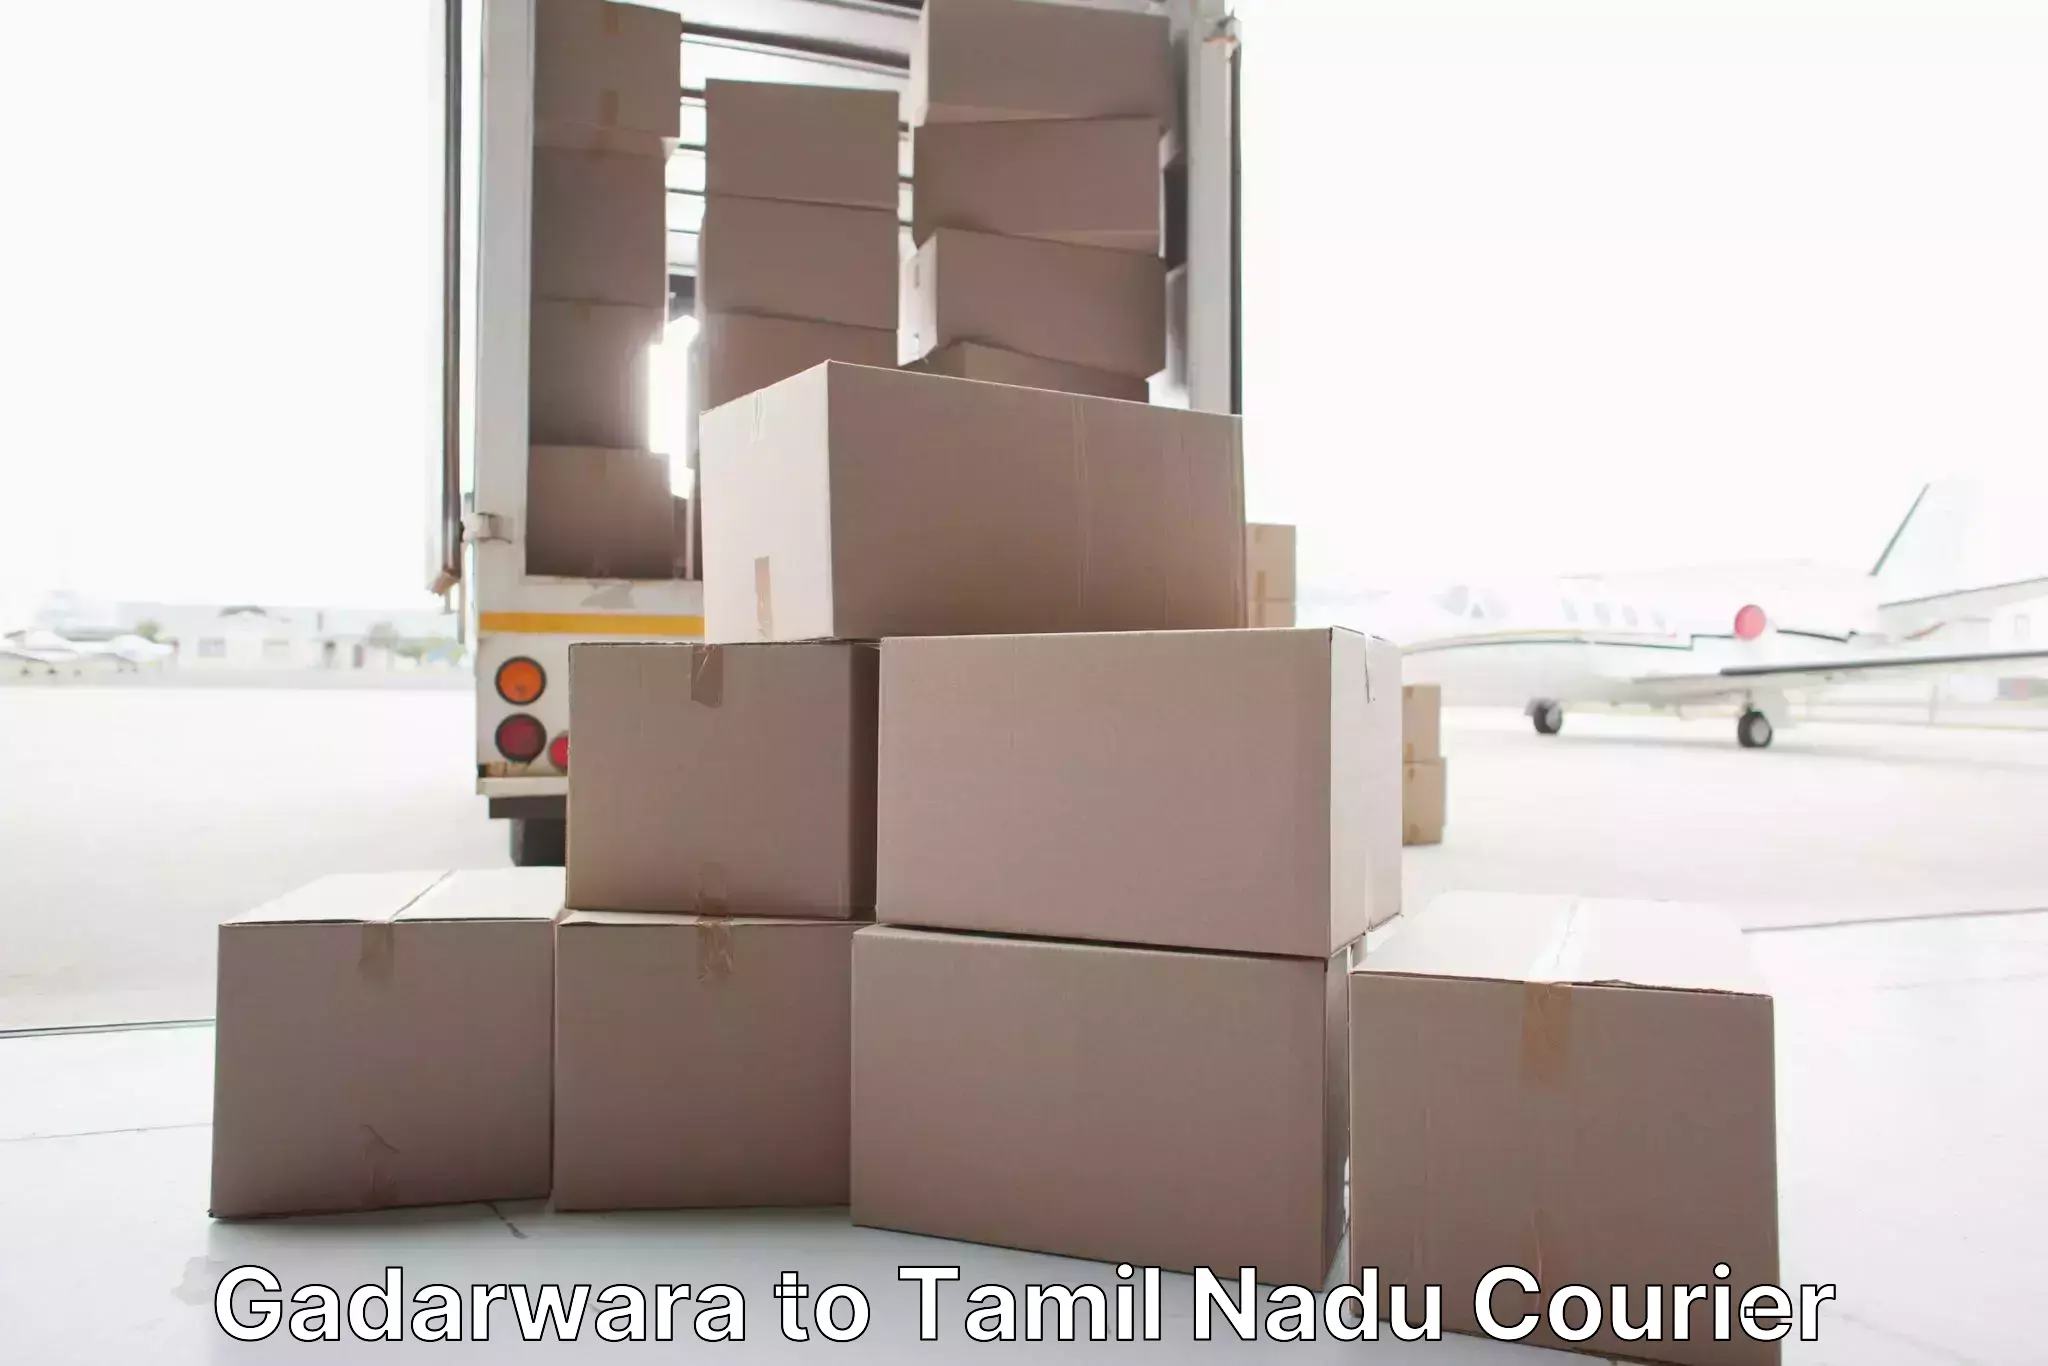 Furniture transport service Gadarwara to Kanchipuram